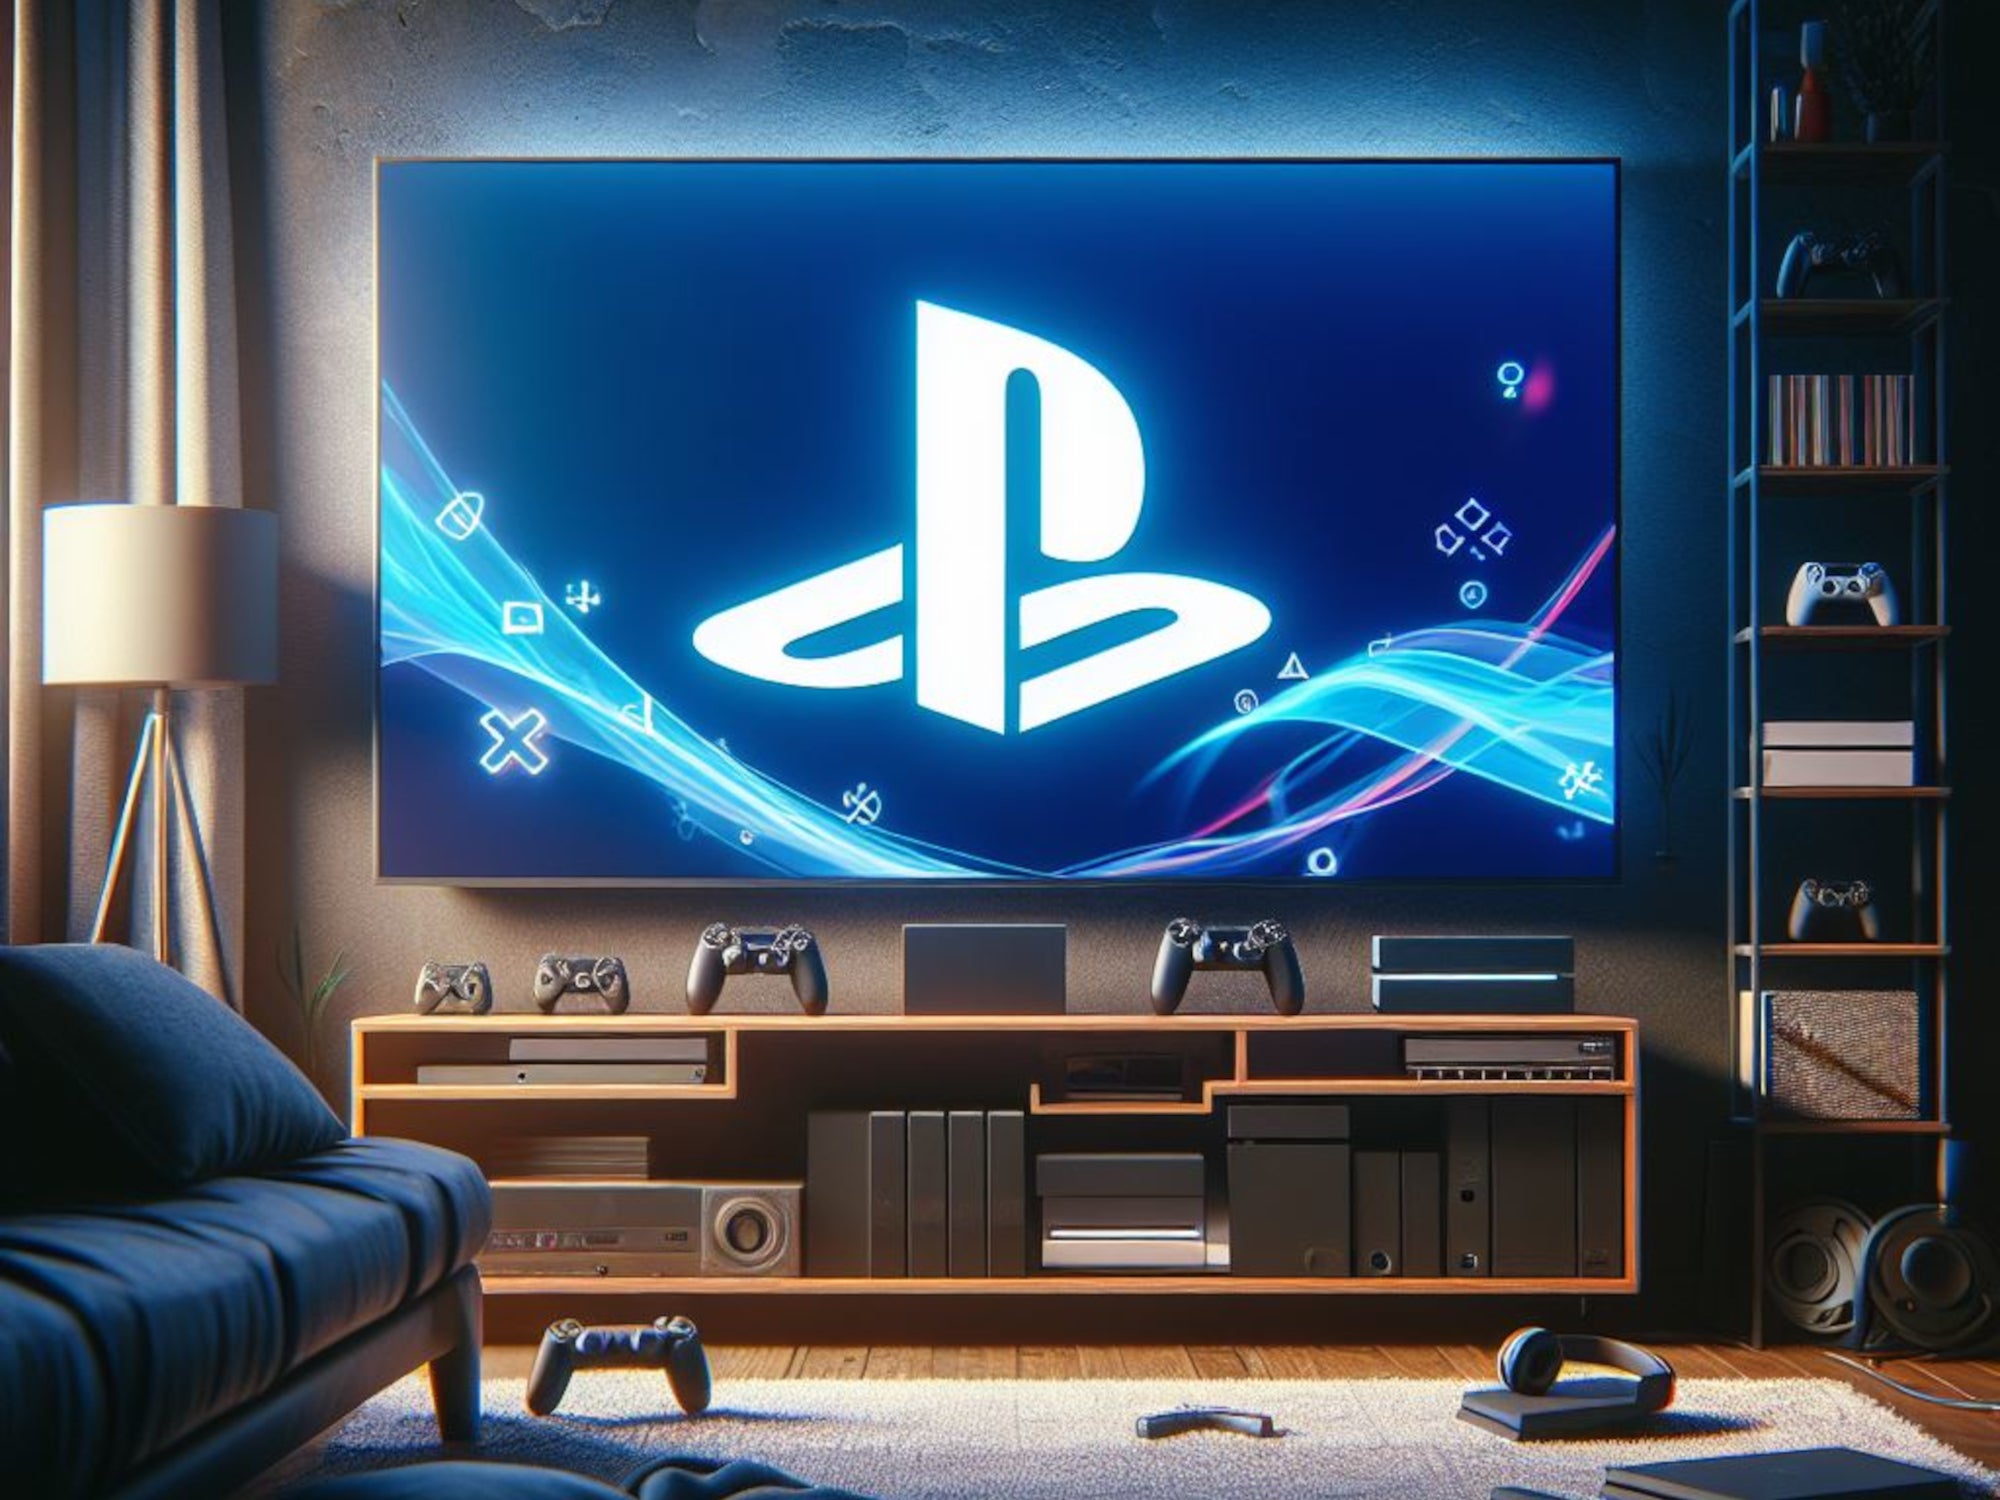 #PlayStation-Nutzer geschockt: Sony hat schlechte Nachrichten